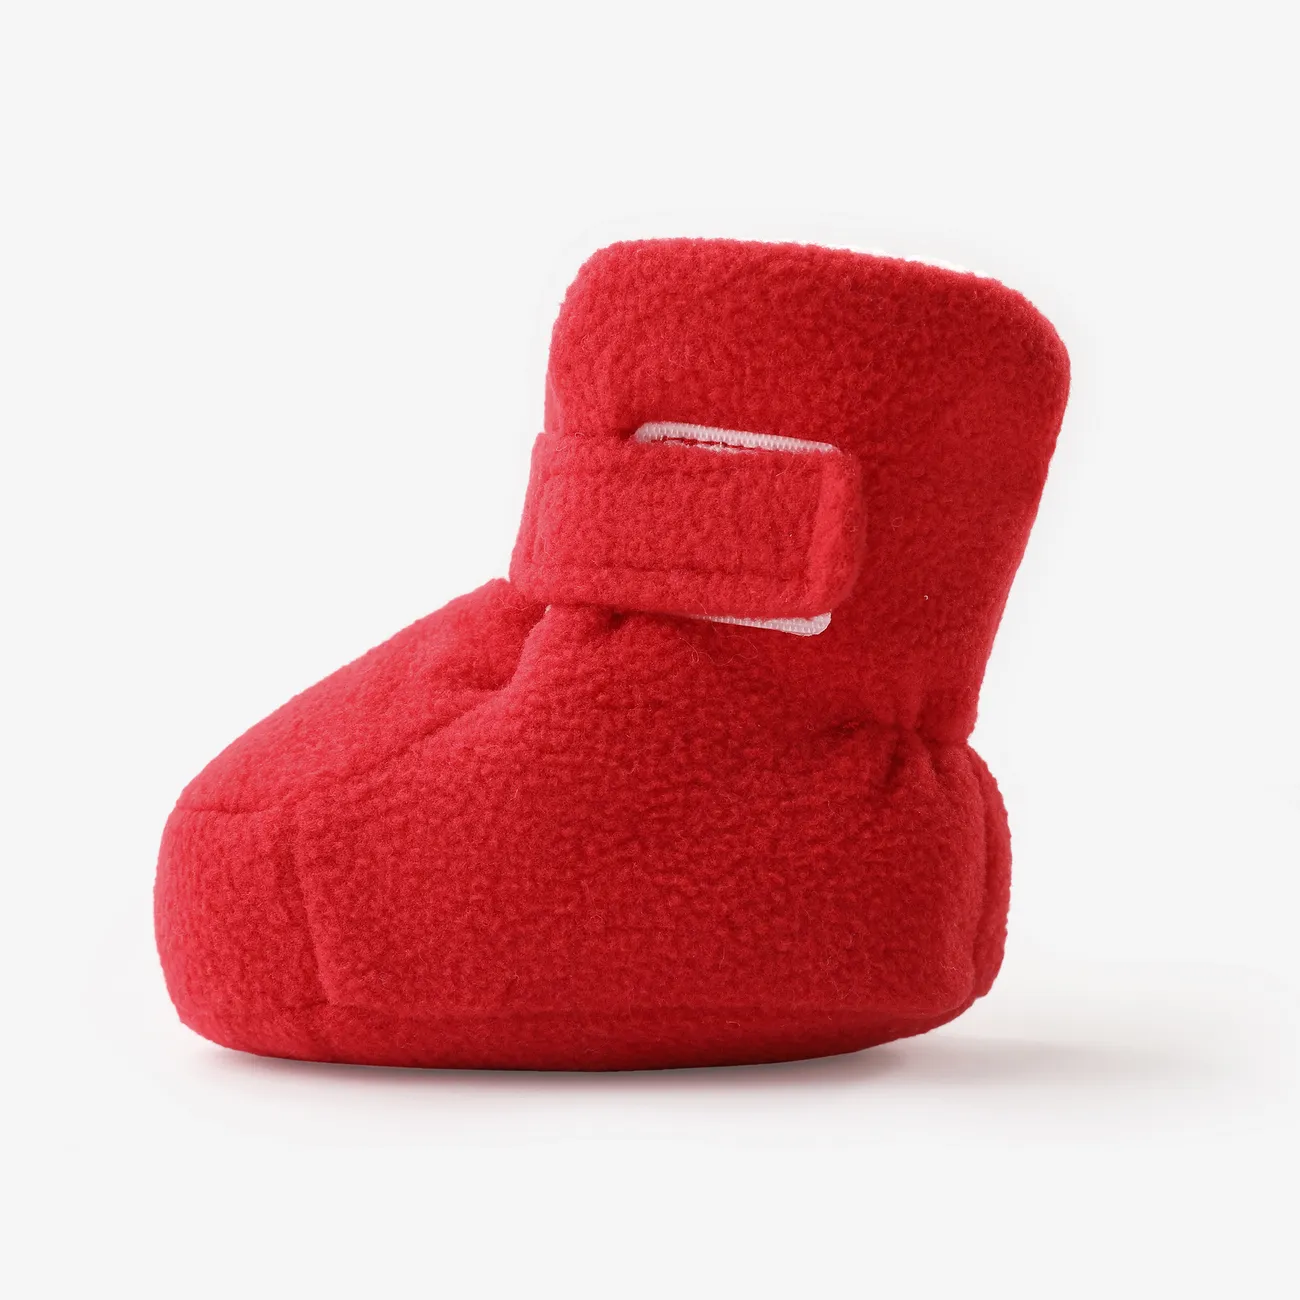 أحذية قطنية دافئة ناعمة من الصوف العالي من الطفل أحمر big image 1